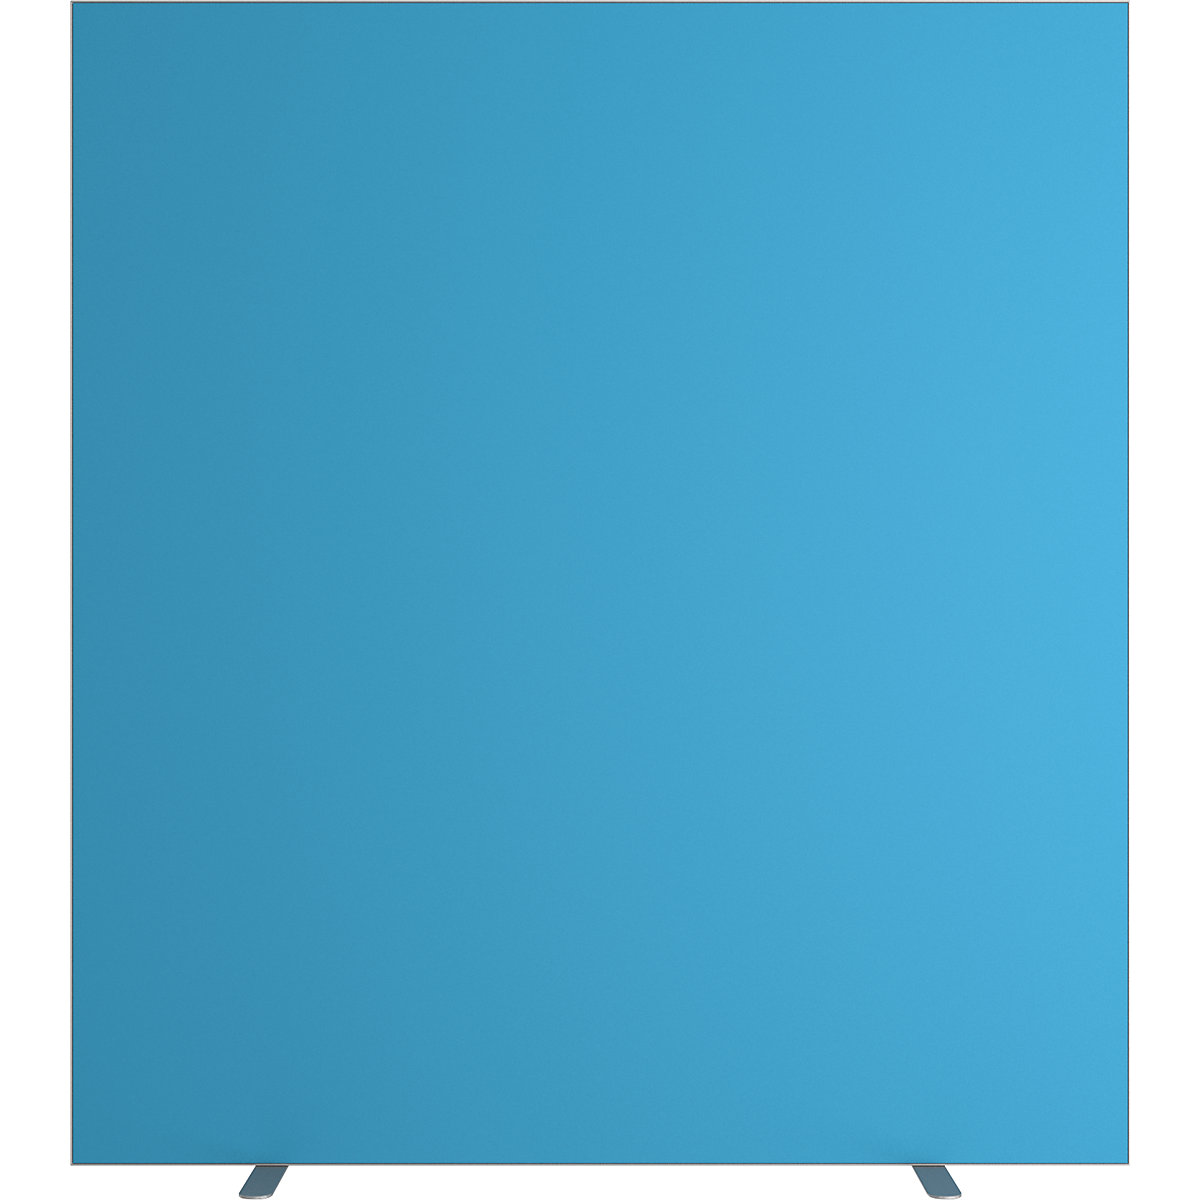 Predelna stena easyScreen, enobarvna izvedba, z zvočno izolacijo, modre barve, širina 1600 mm